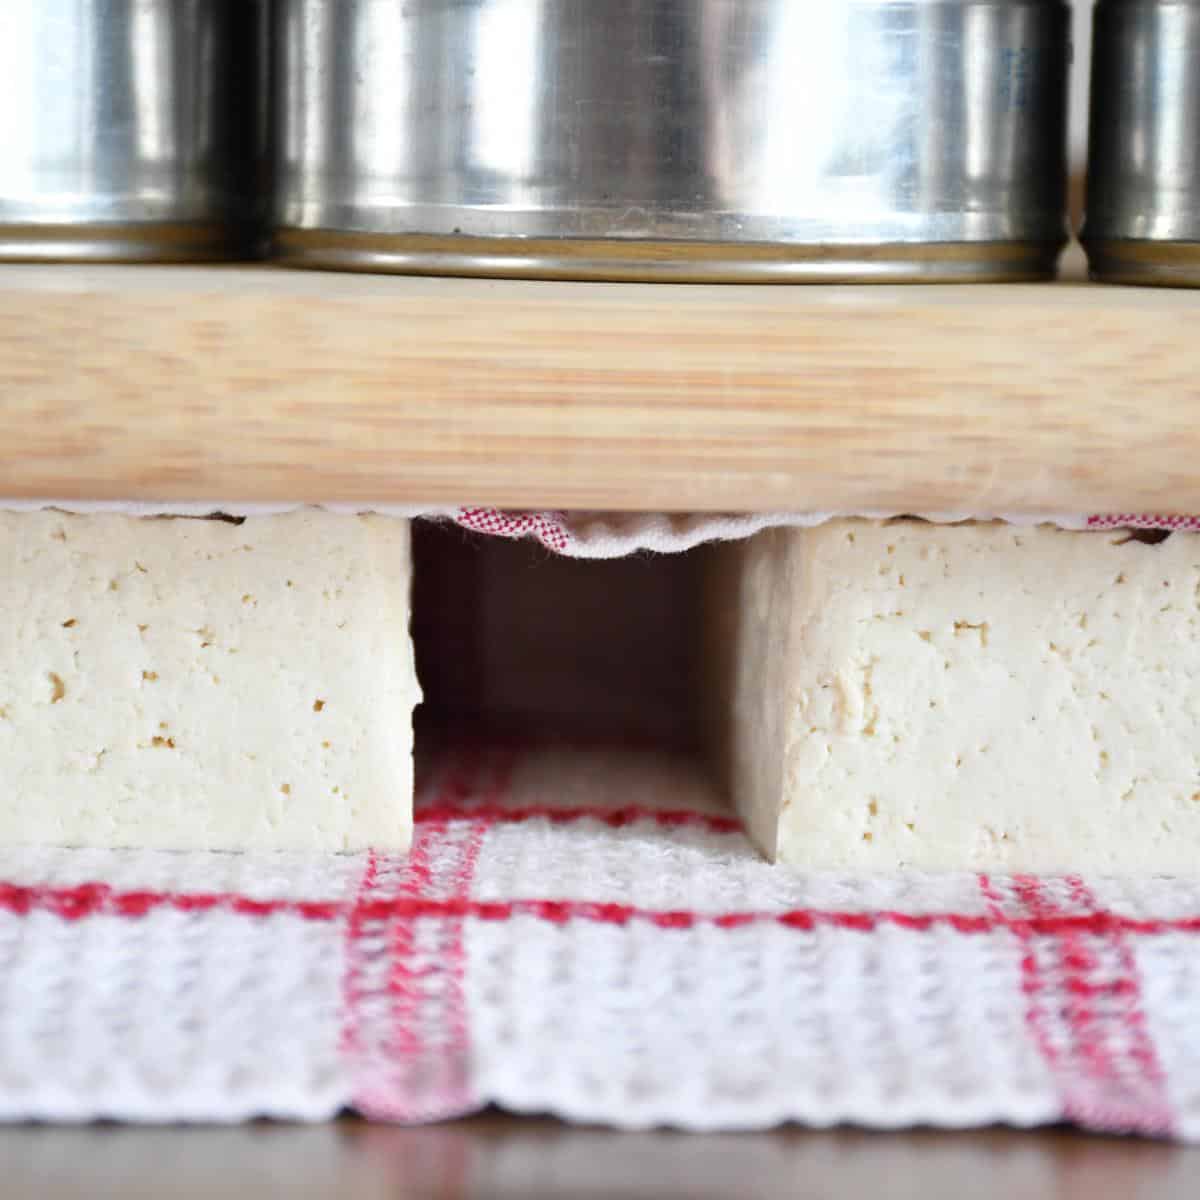 Bloc de tofu pressé entre deux planches à découper pour enlever autant de liquide que possible.